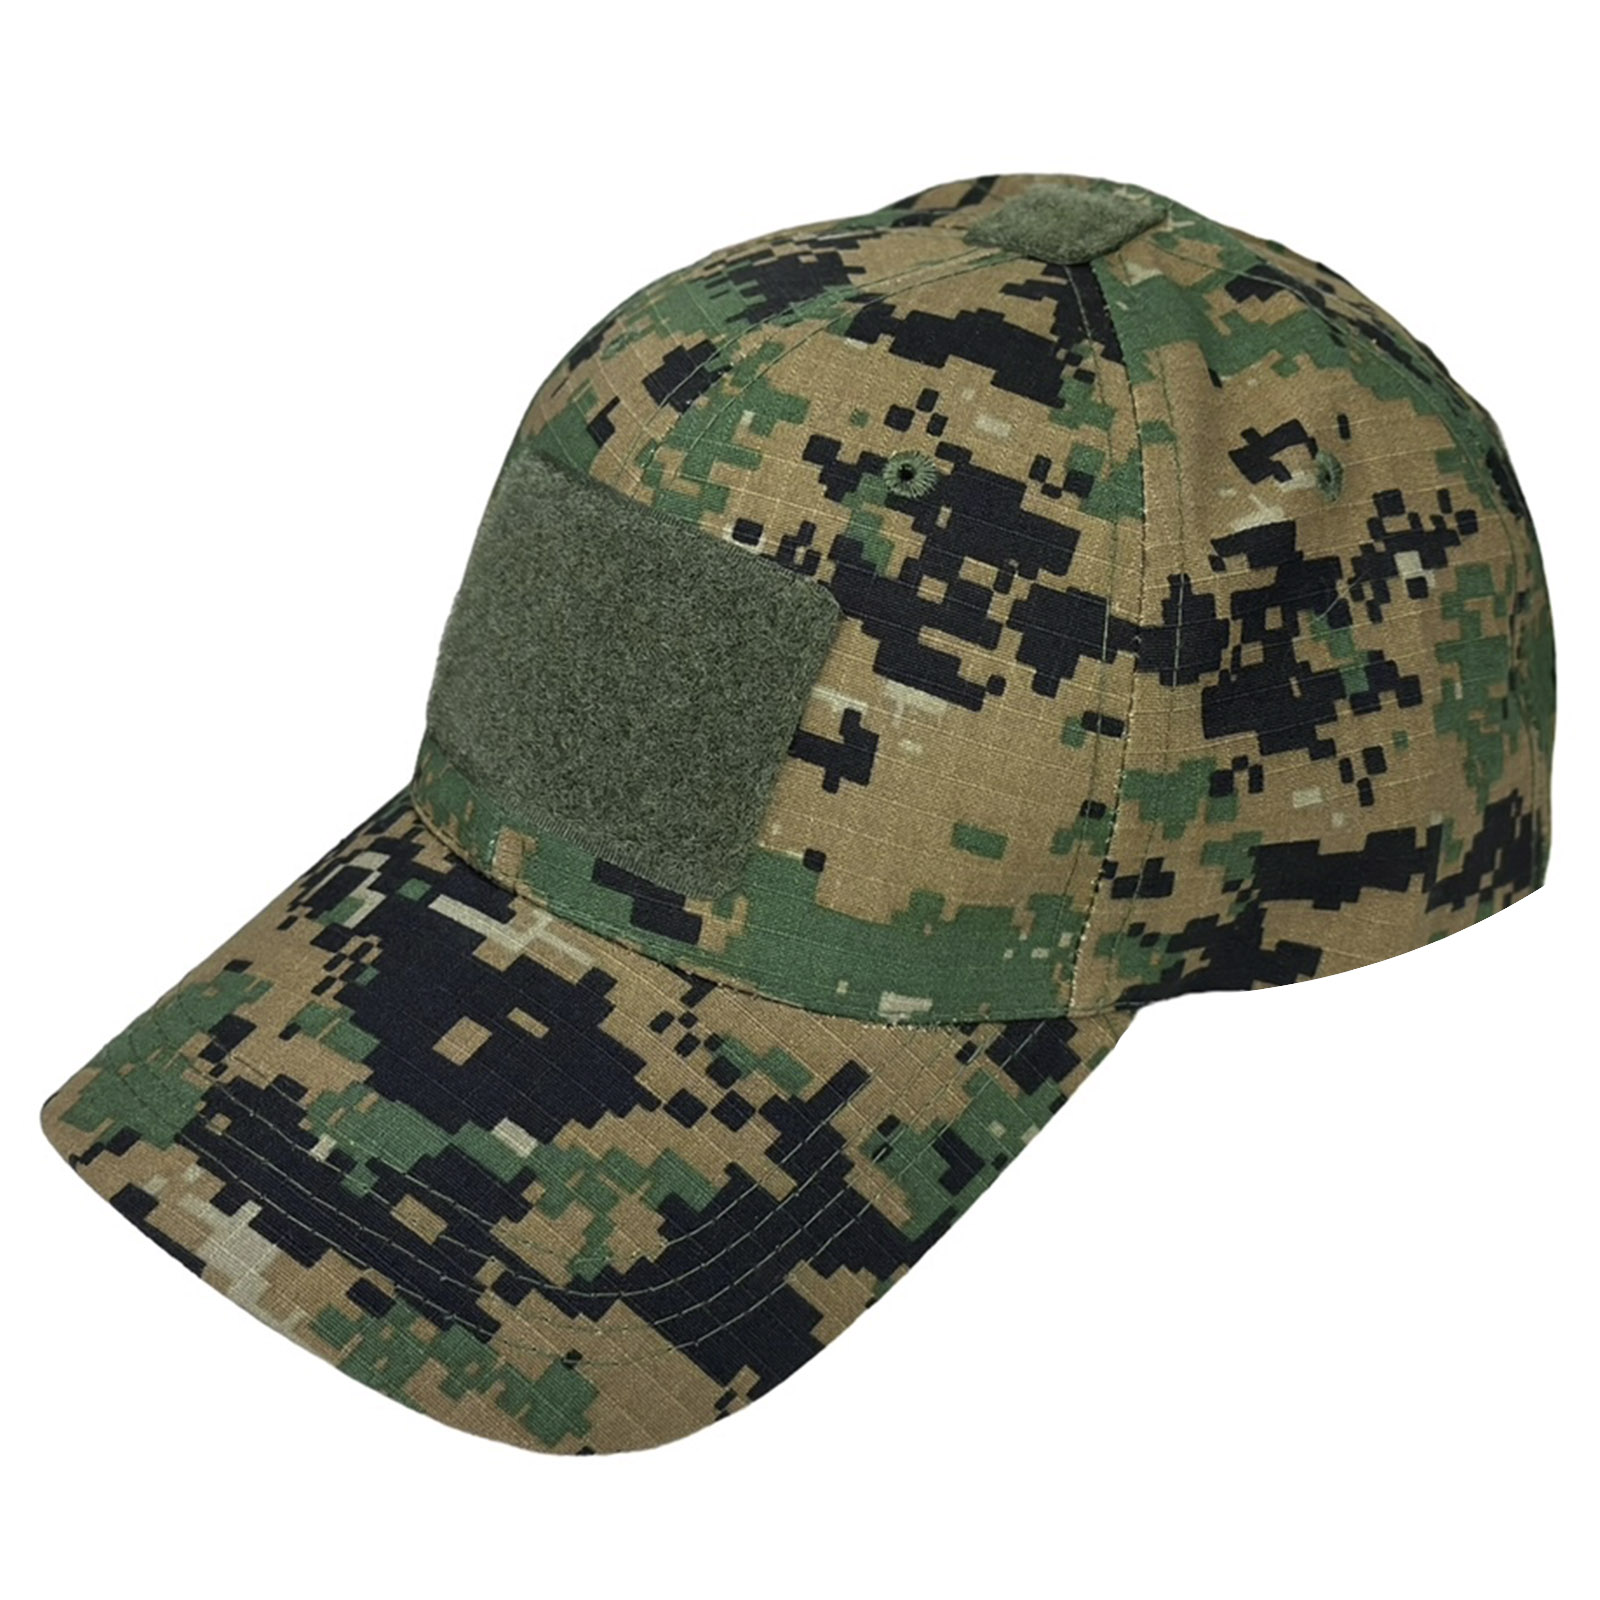 Купить армейскую кепку выгоднее онлайн